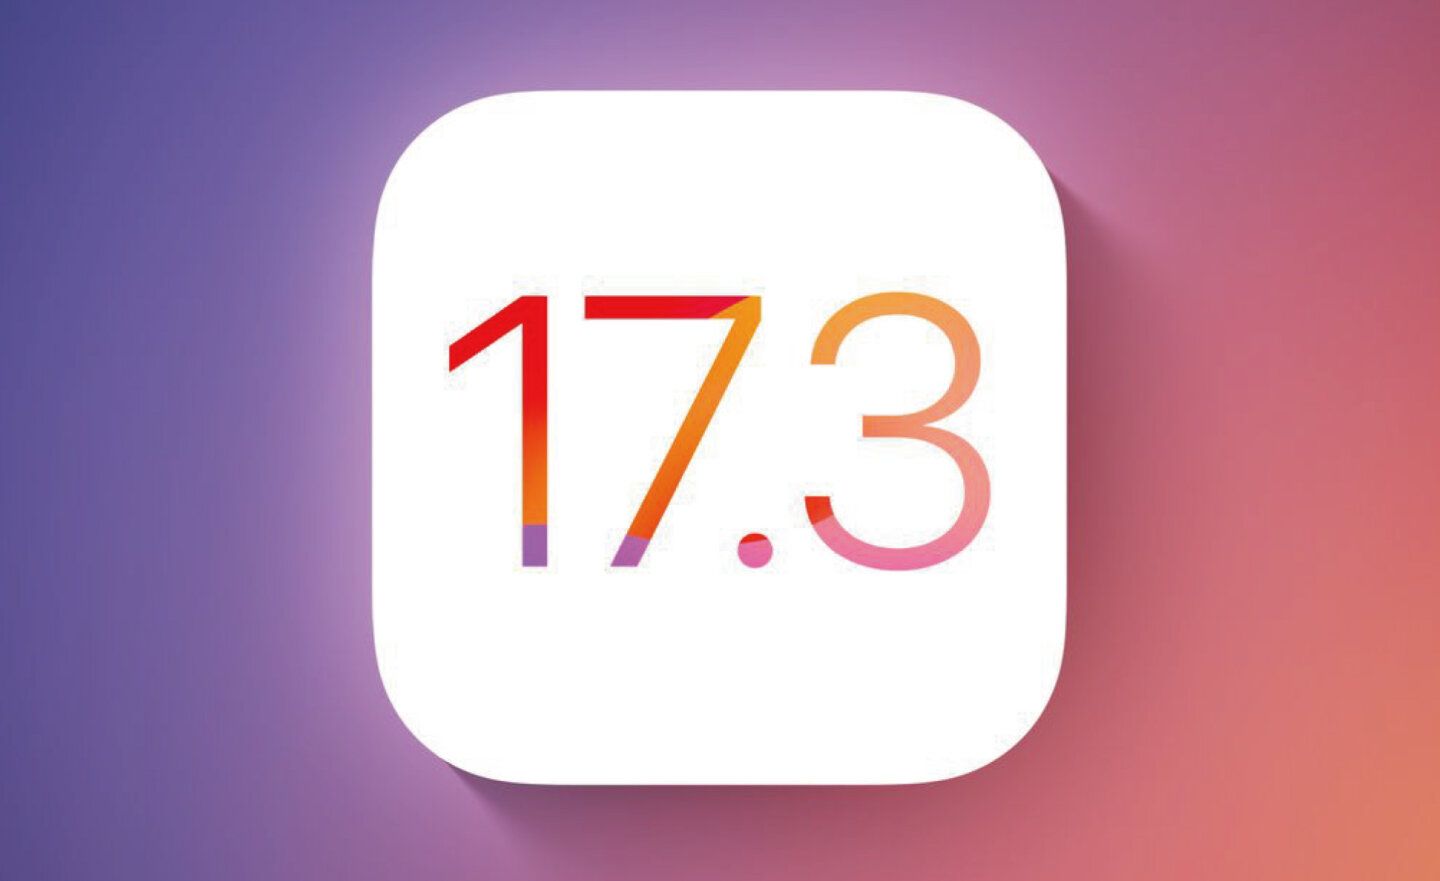 Apple 蘋果釋出 iOS 17.3 / iPadOS 17.3 更新，新增了遭竊裝置防護、2024 團結背景圖片等功能